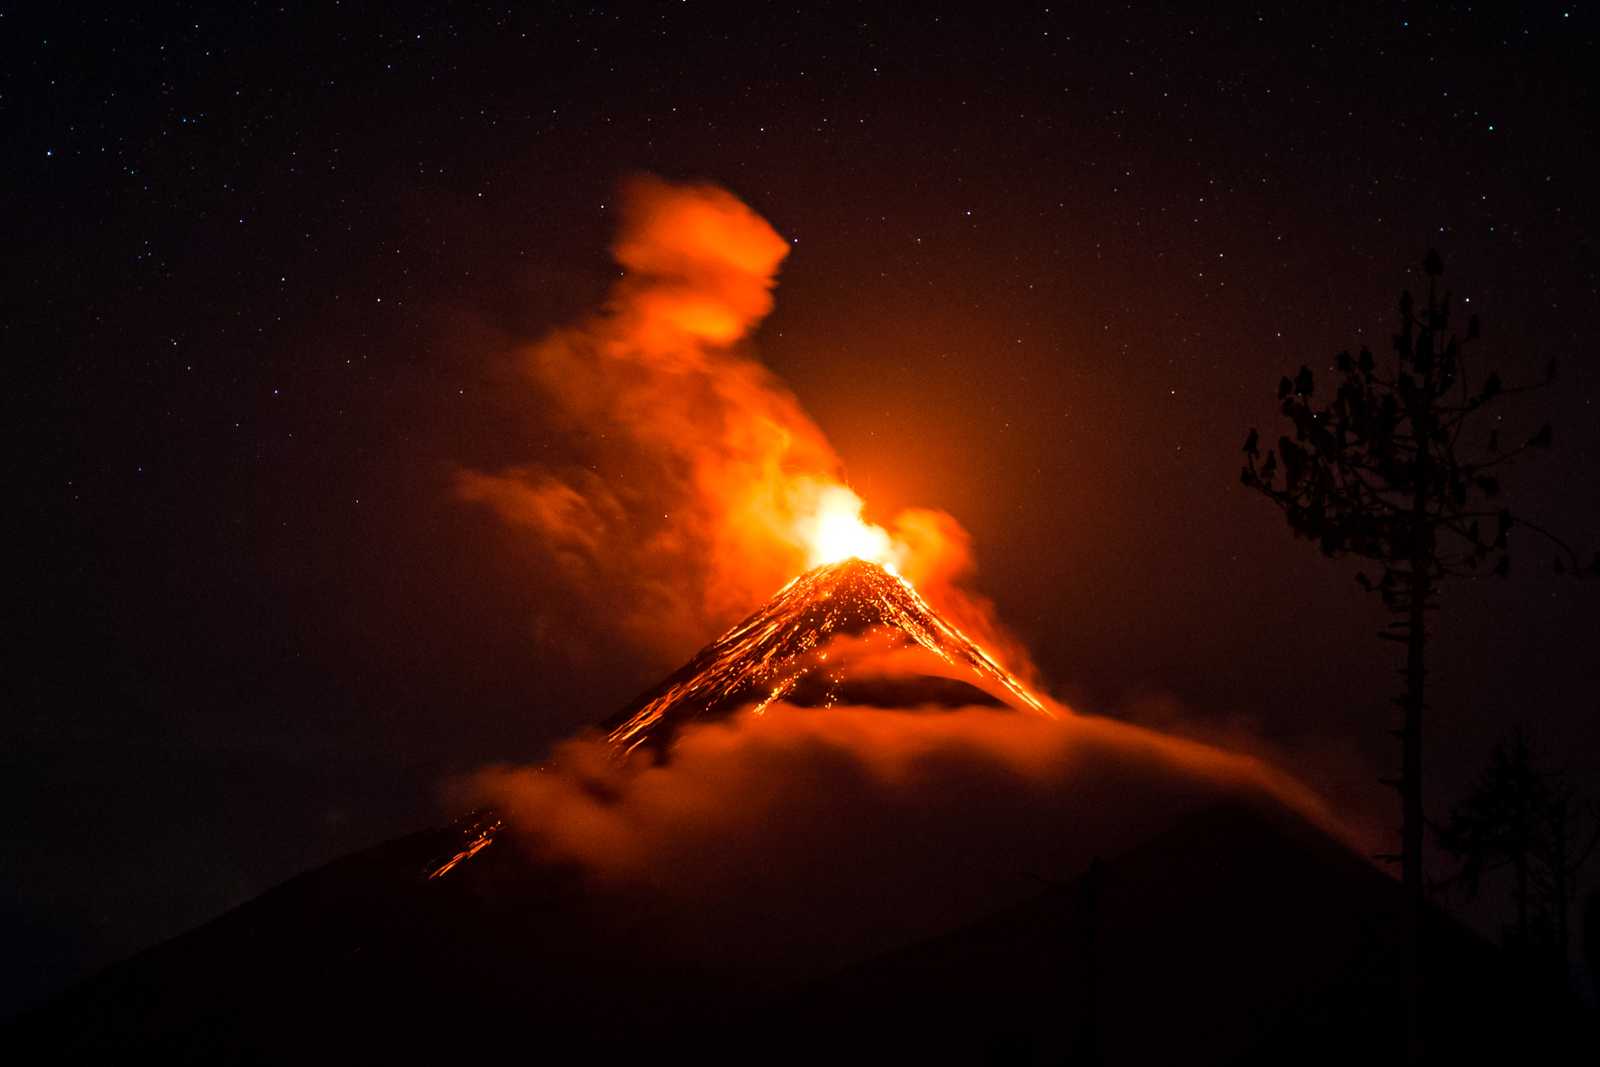 A volcano eruption in the dark